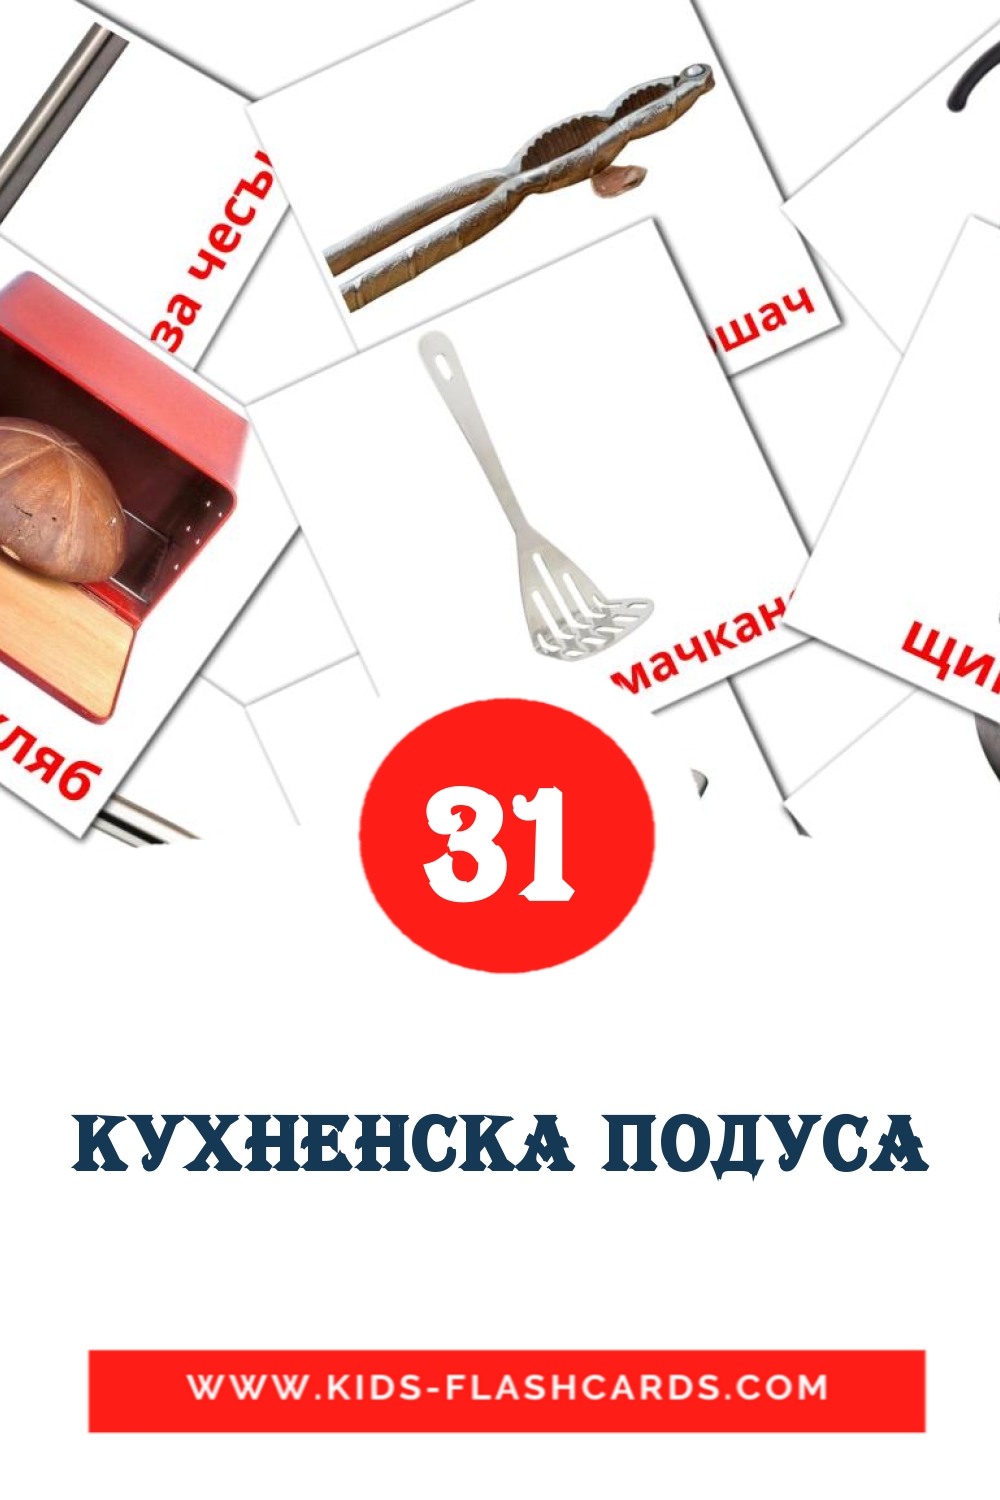 31 tarjetas didacticas de Кухненска подуса para el jardín de infancia en búlgaro